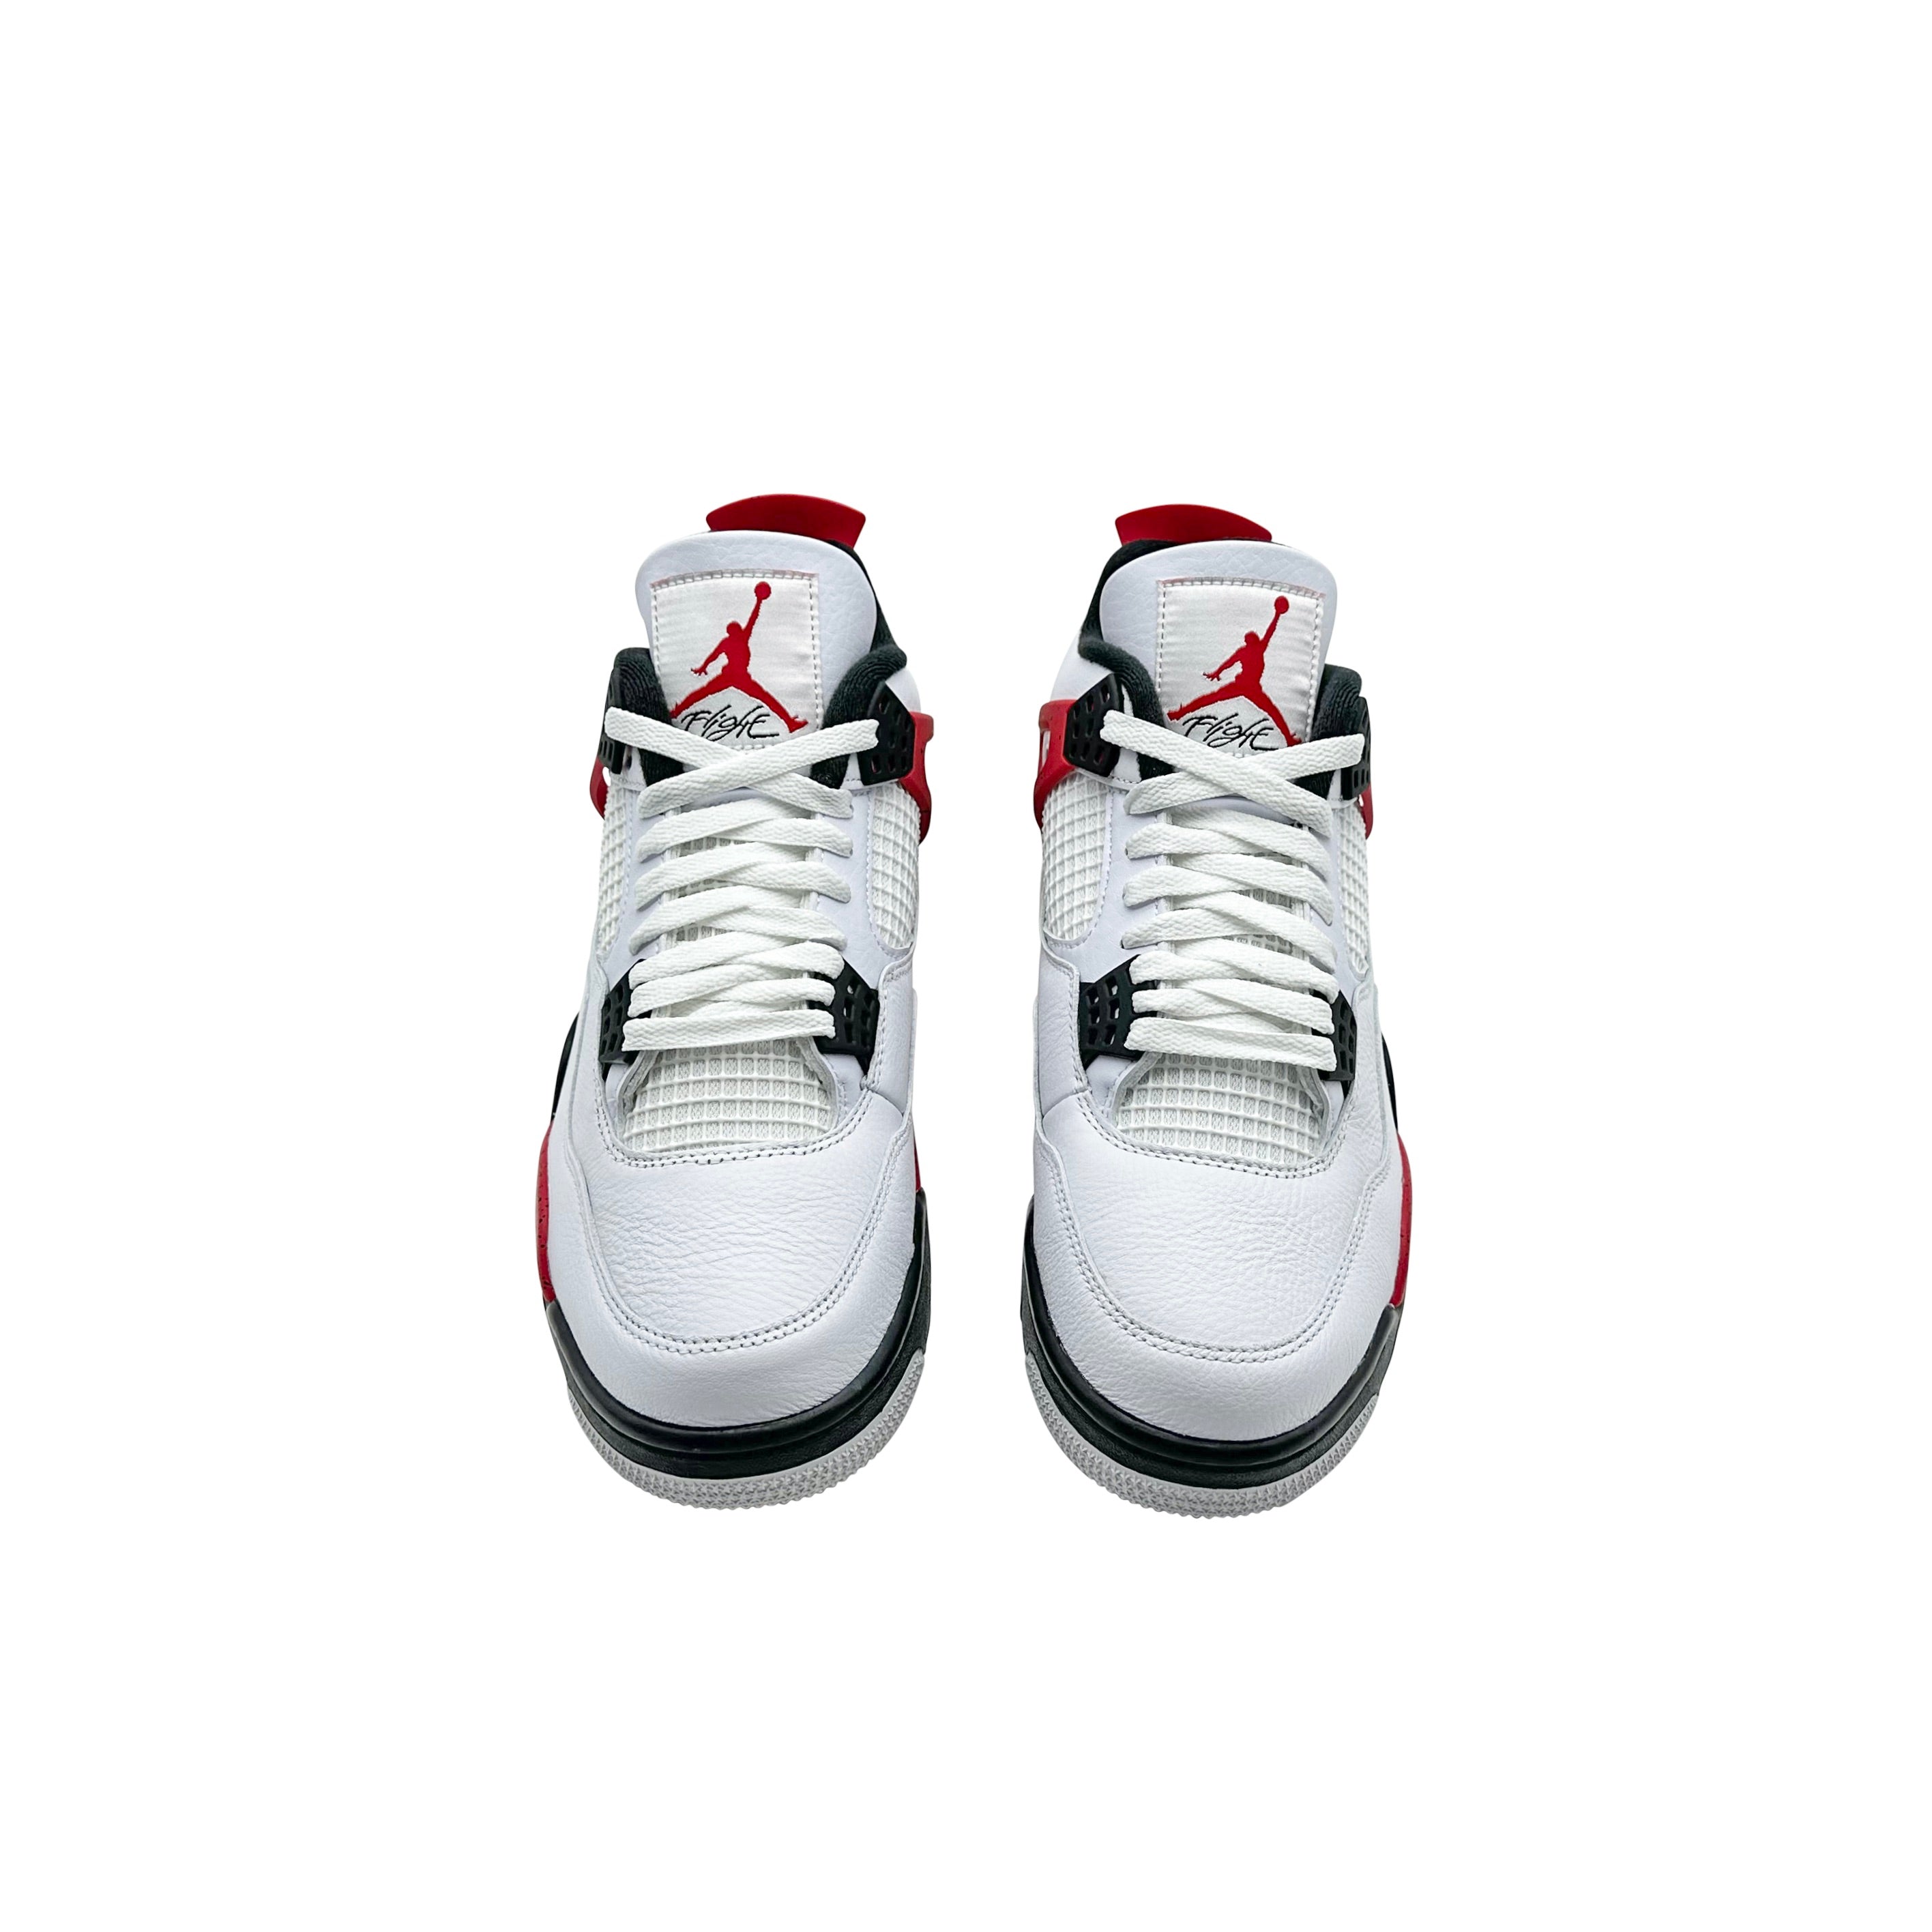 Nike Air Jordan 4 Retro Red Cement 